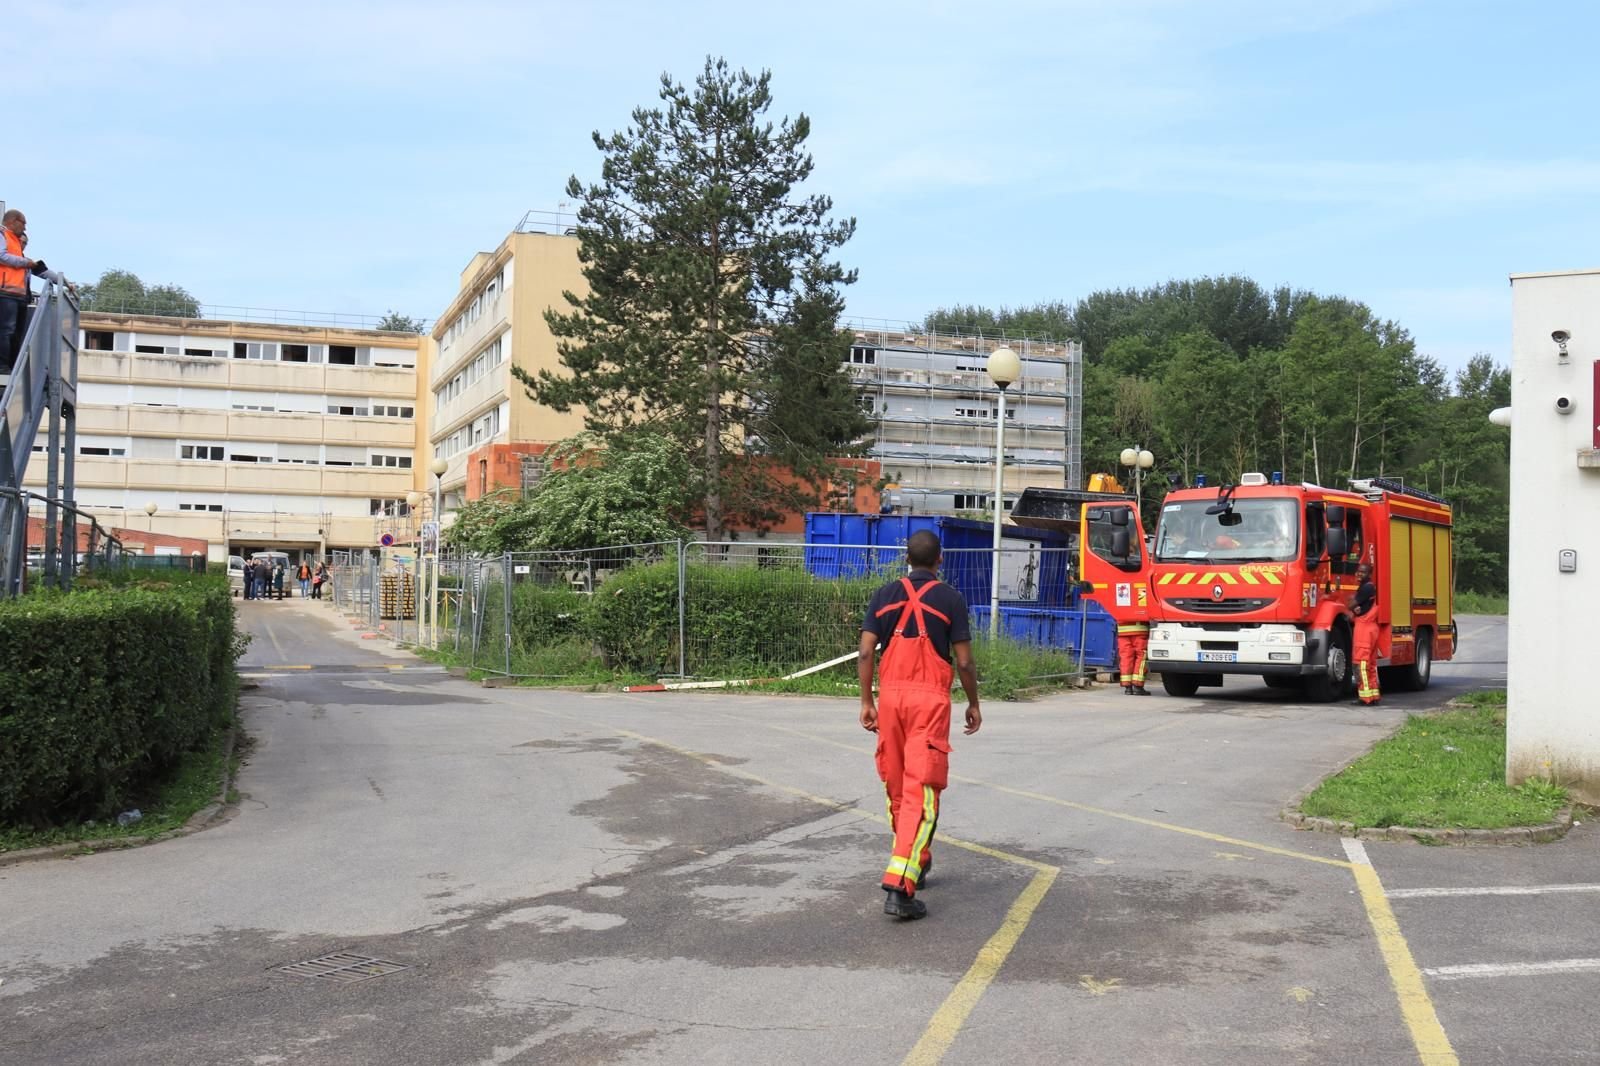 Montataire (Oise), lundi 3 juin. Un incendie s'est déclaré vers 5 heures du matin dans une résidence Coallia, faisant un mort. LP/Juliette Vienot de Vaublanc.